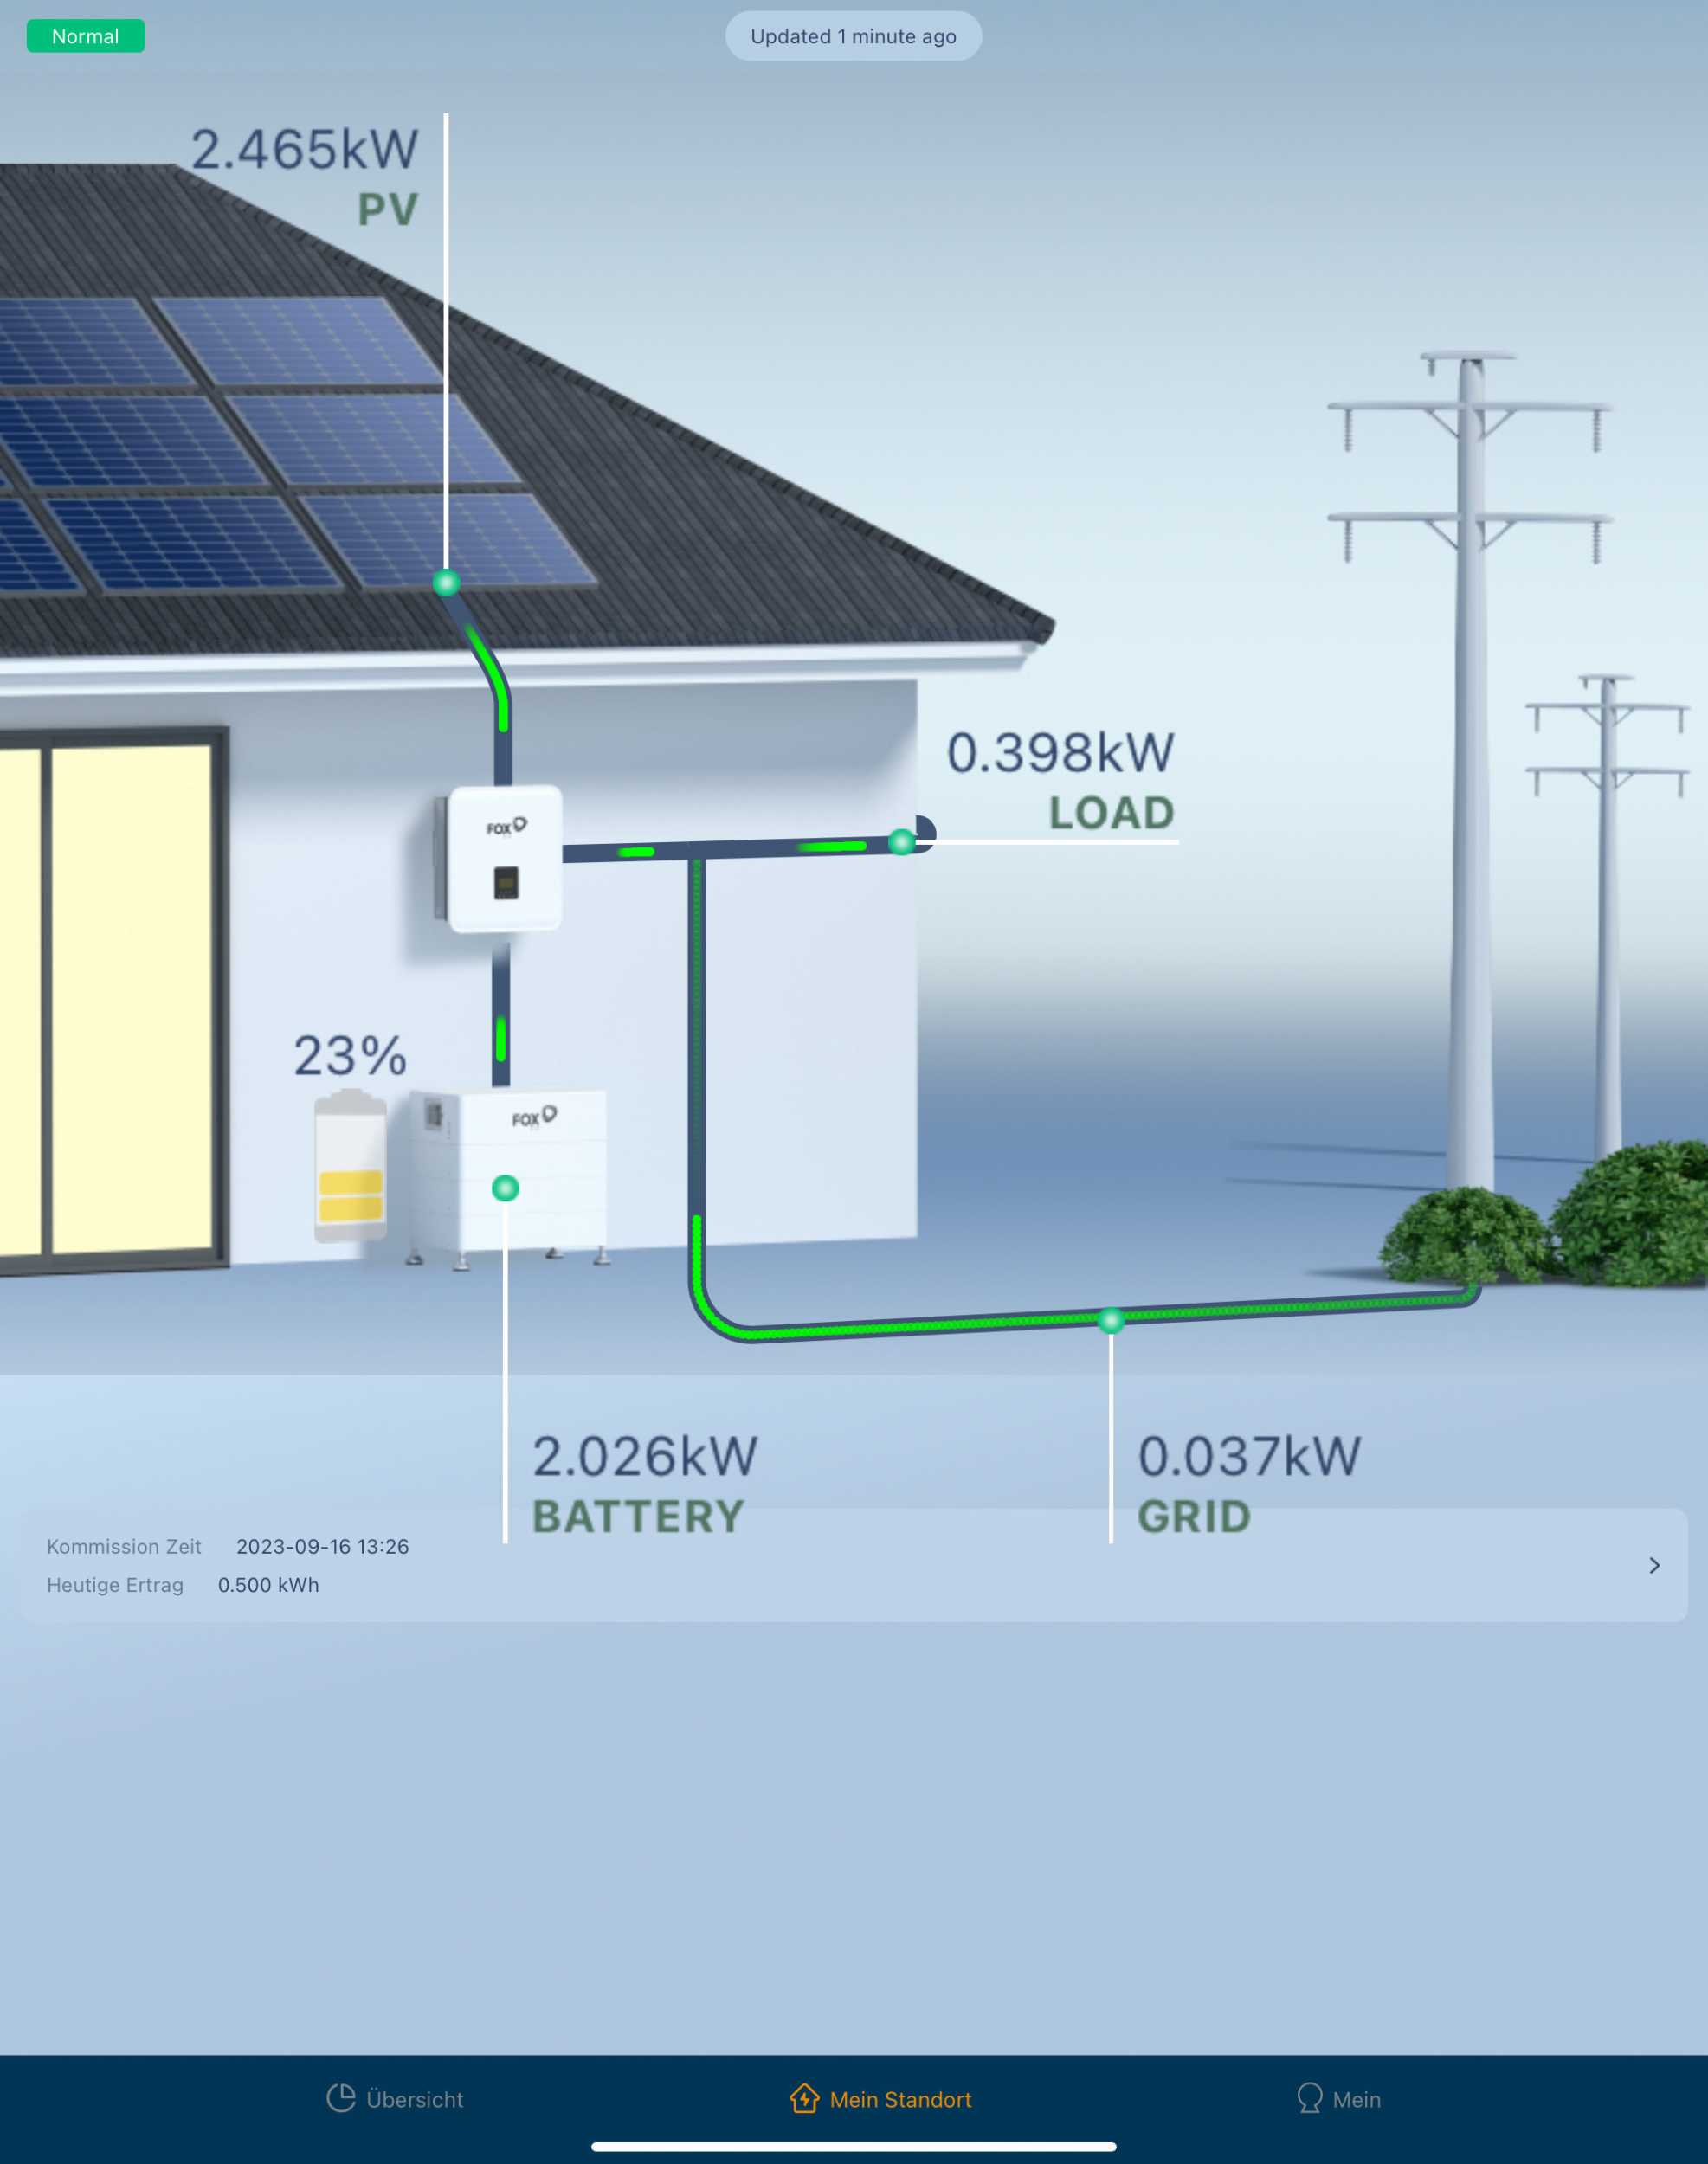 Unsere Photovoltaik-Anlage: Energieerzeugung 1